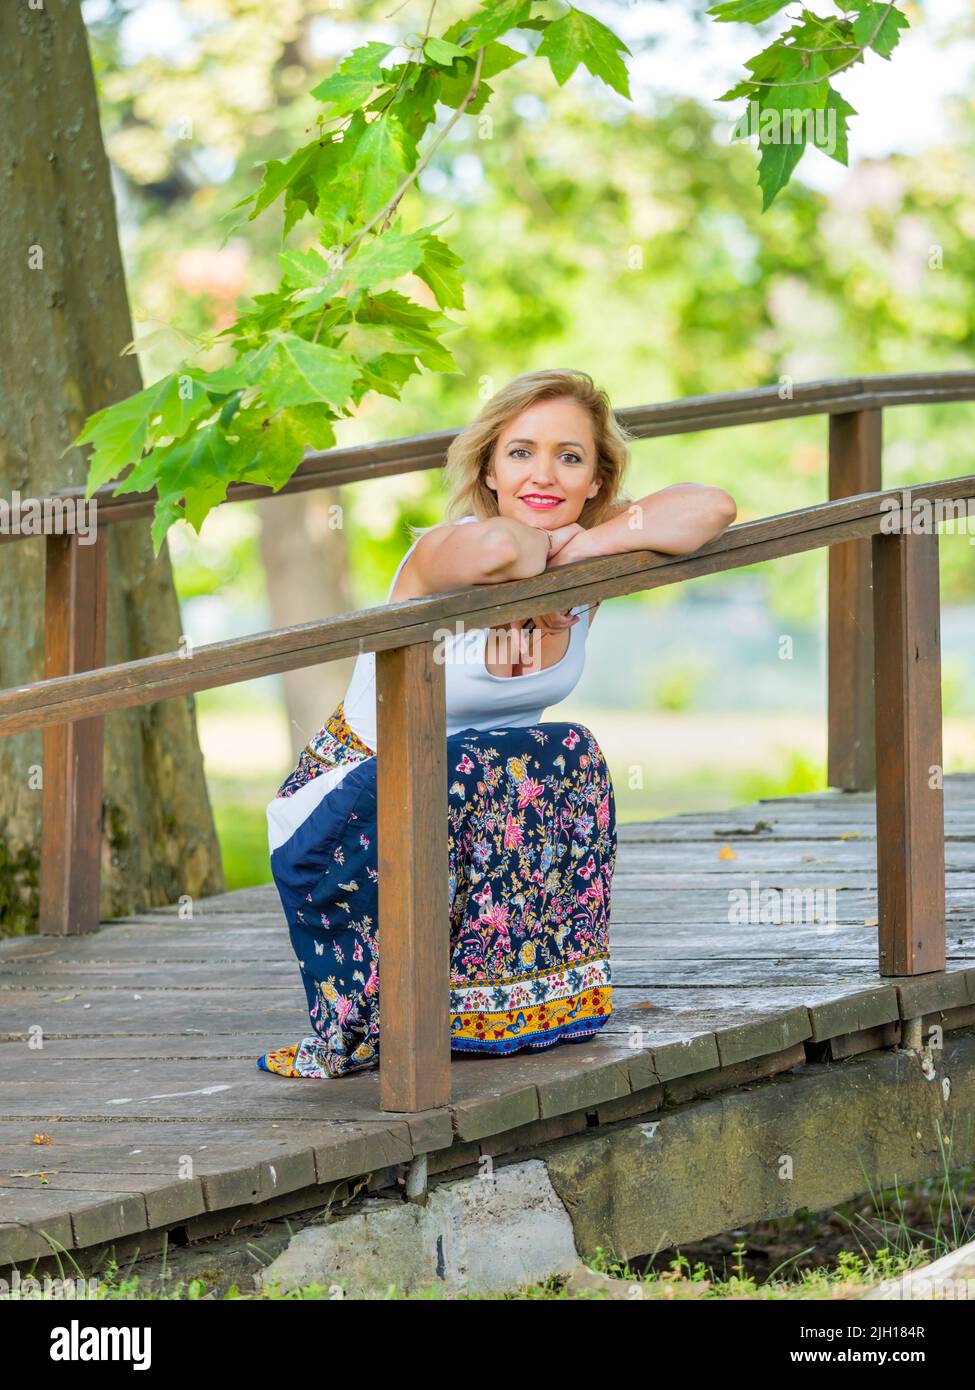 La donna attraente sta squatting squat inclinato su recinto di legno sul passerella guardando la macchina fotografica sorridente Foto Stock